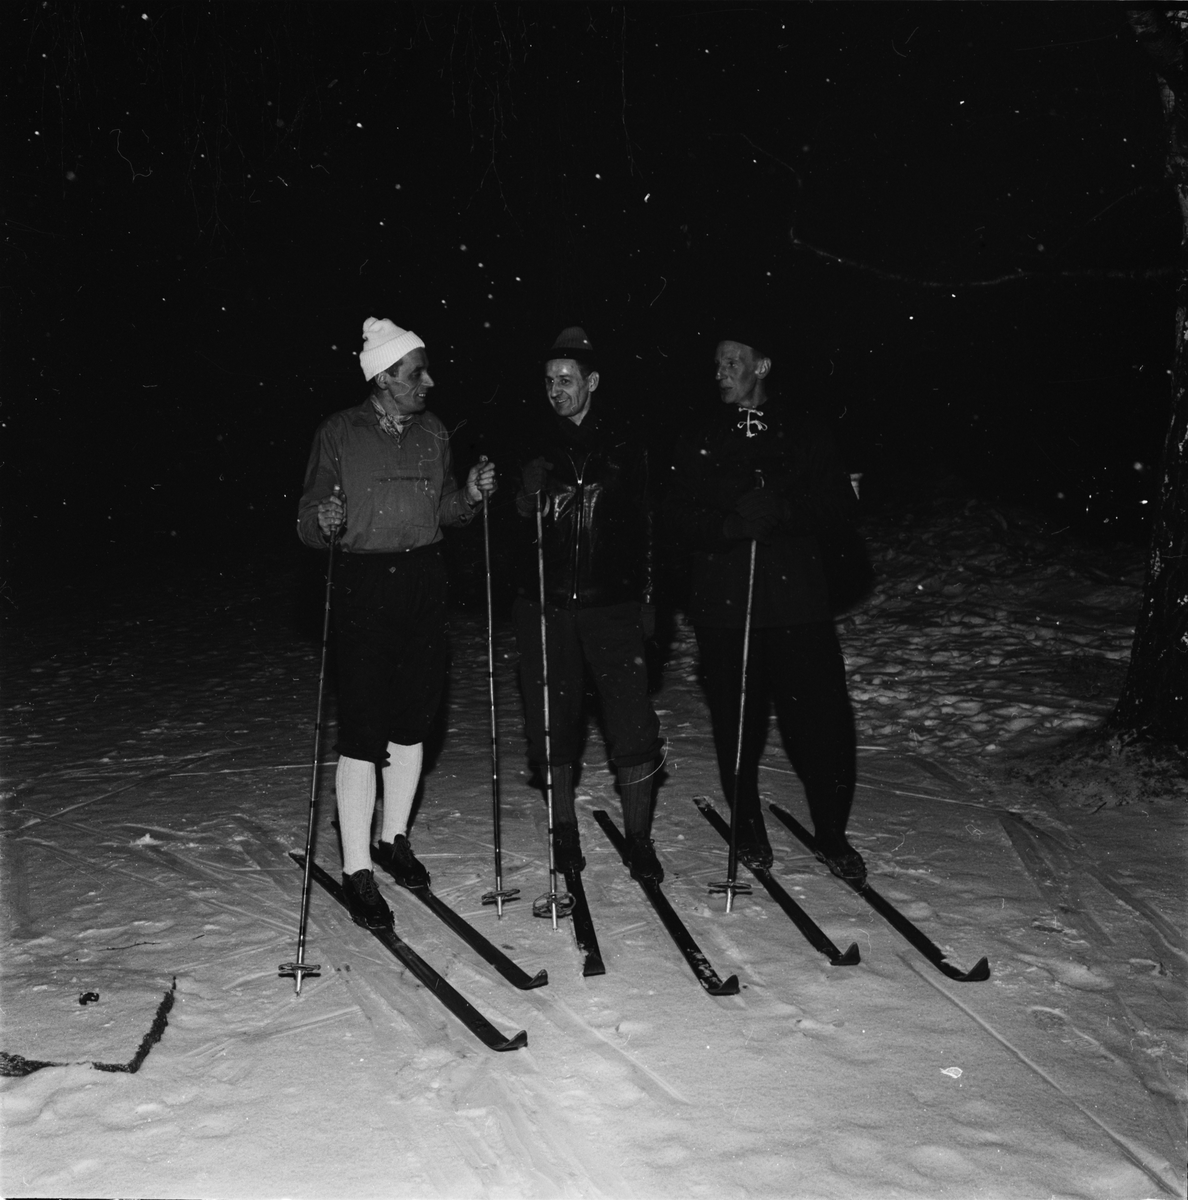 Skidåkning - "uppländsk släkttrio i Vasaloppet", Uppsala 1962